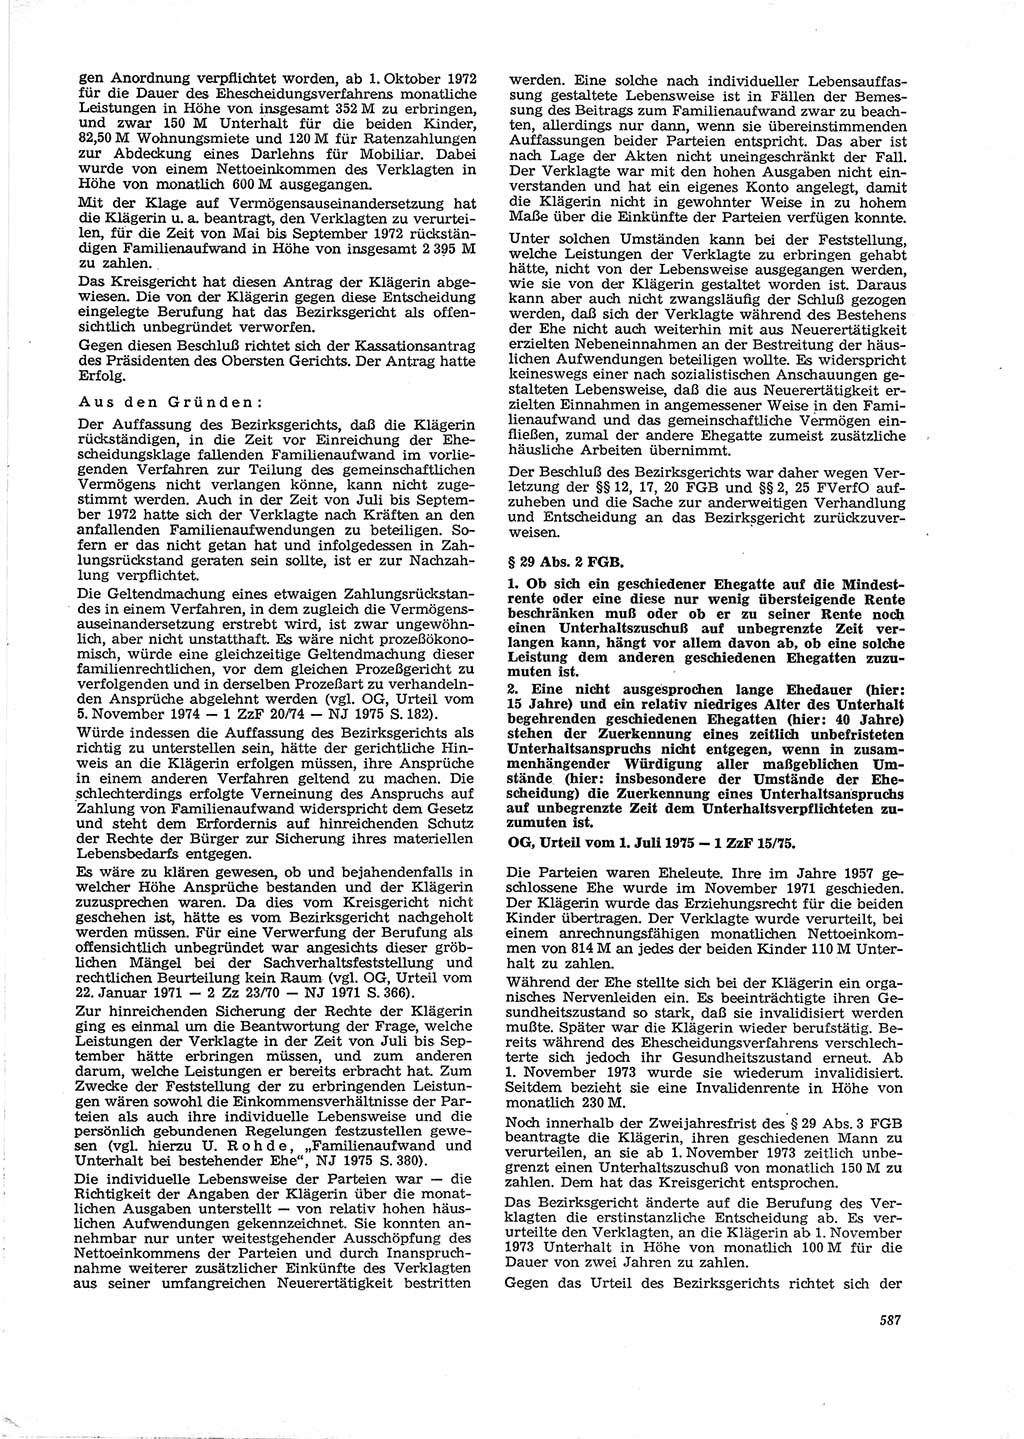 Neue Justiz (NJ), Zeitschrift für Recht und Rechtswissenschaft [Deutsche Demokratische Republik (DDR)], 29. Jahrgang 1975, Seite 587 (NJ DDR 1975, S. 587)